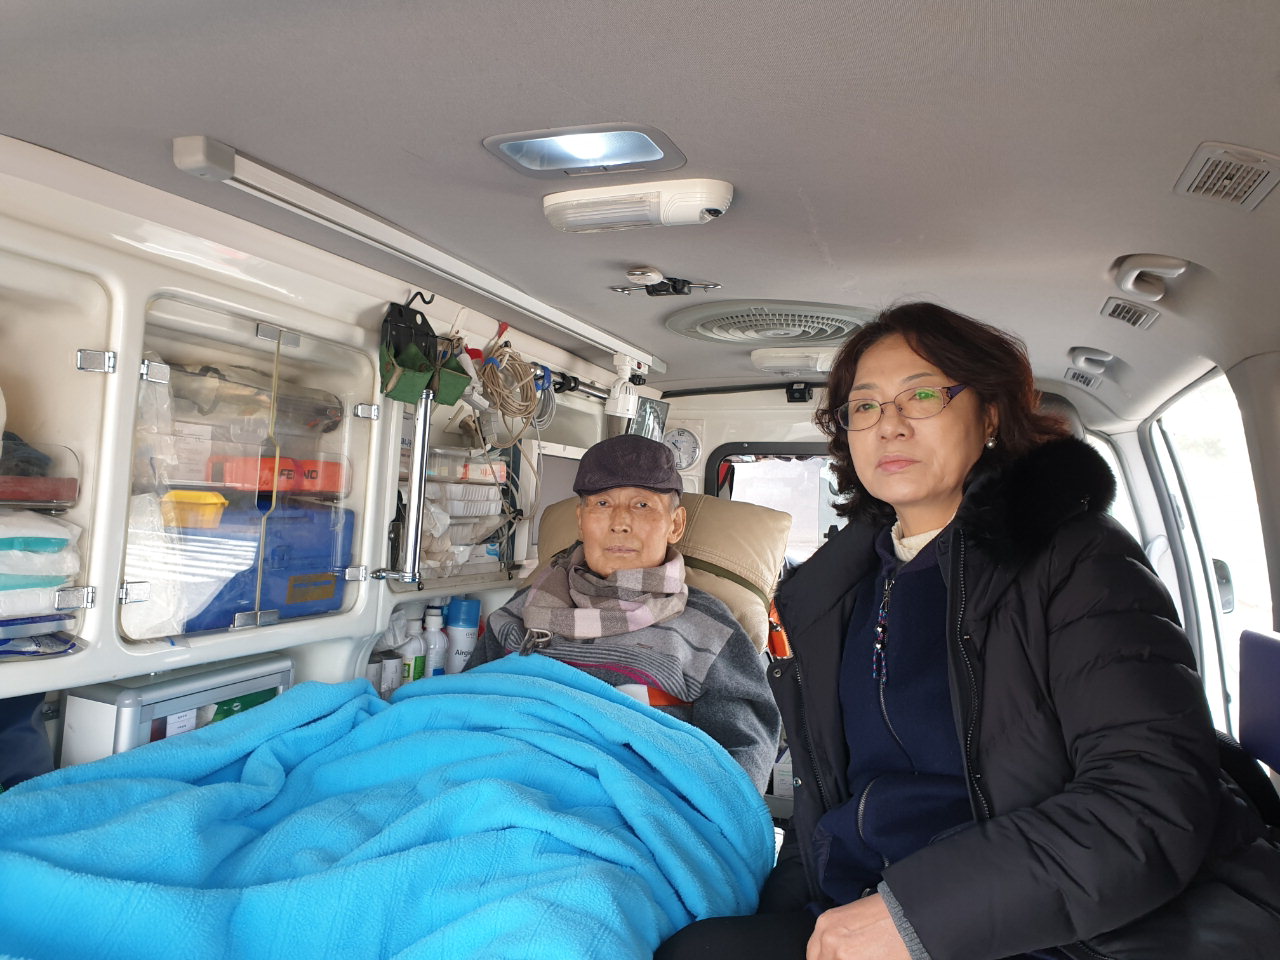 이인선 씨가 응급차량 안에서 부인과 함께 아들의 졸업식을 지켜보고 있다.